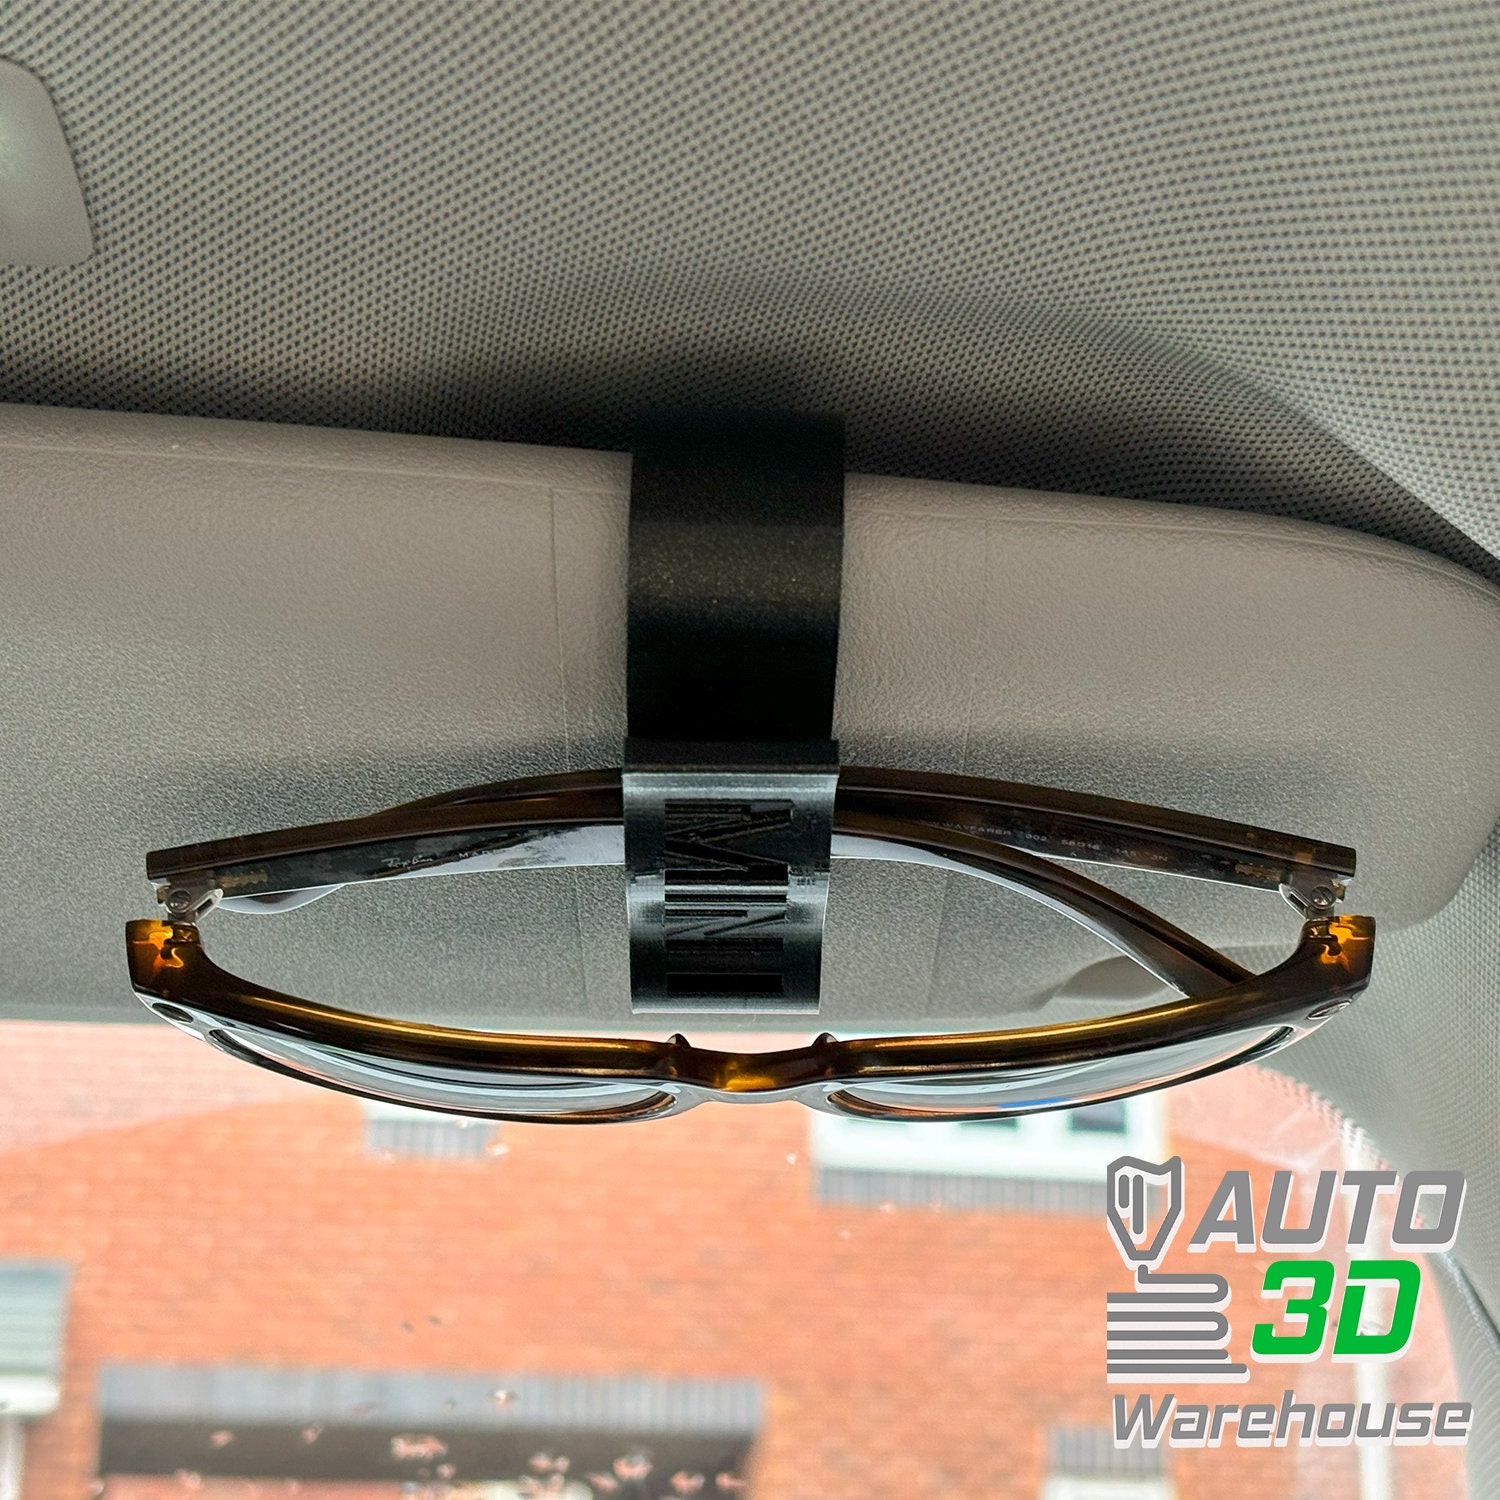 Dashboard Car Sunglasses Holder Case Glasses Stand Ornaments Car Decor  Accessory